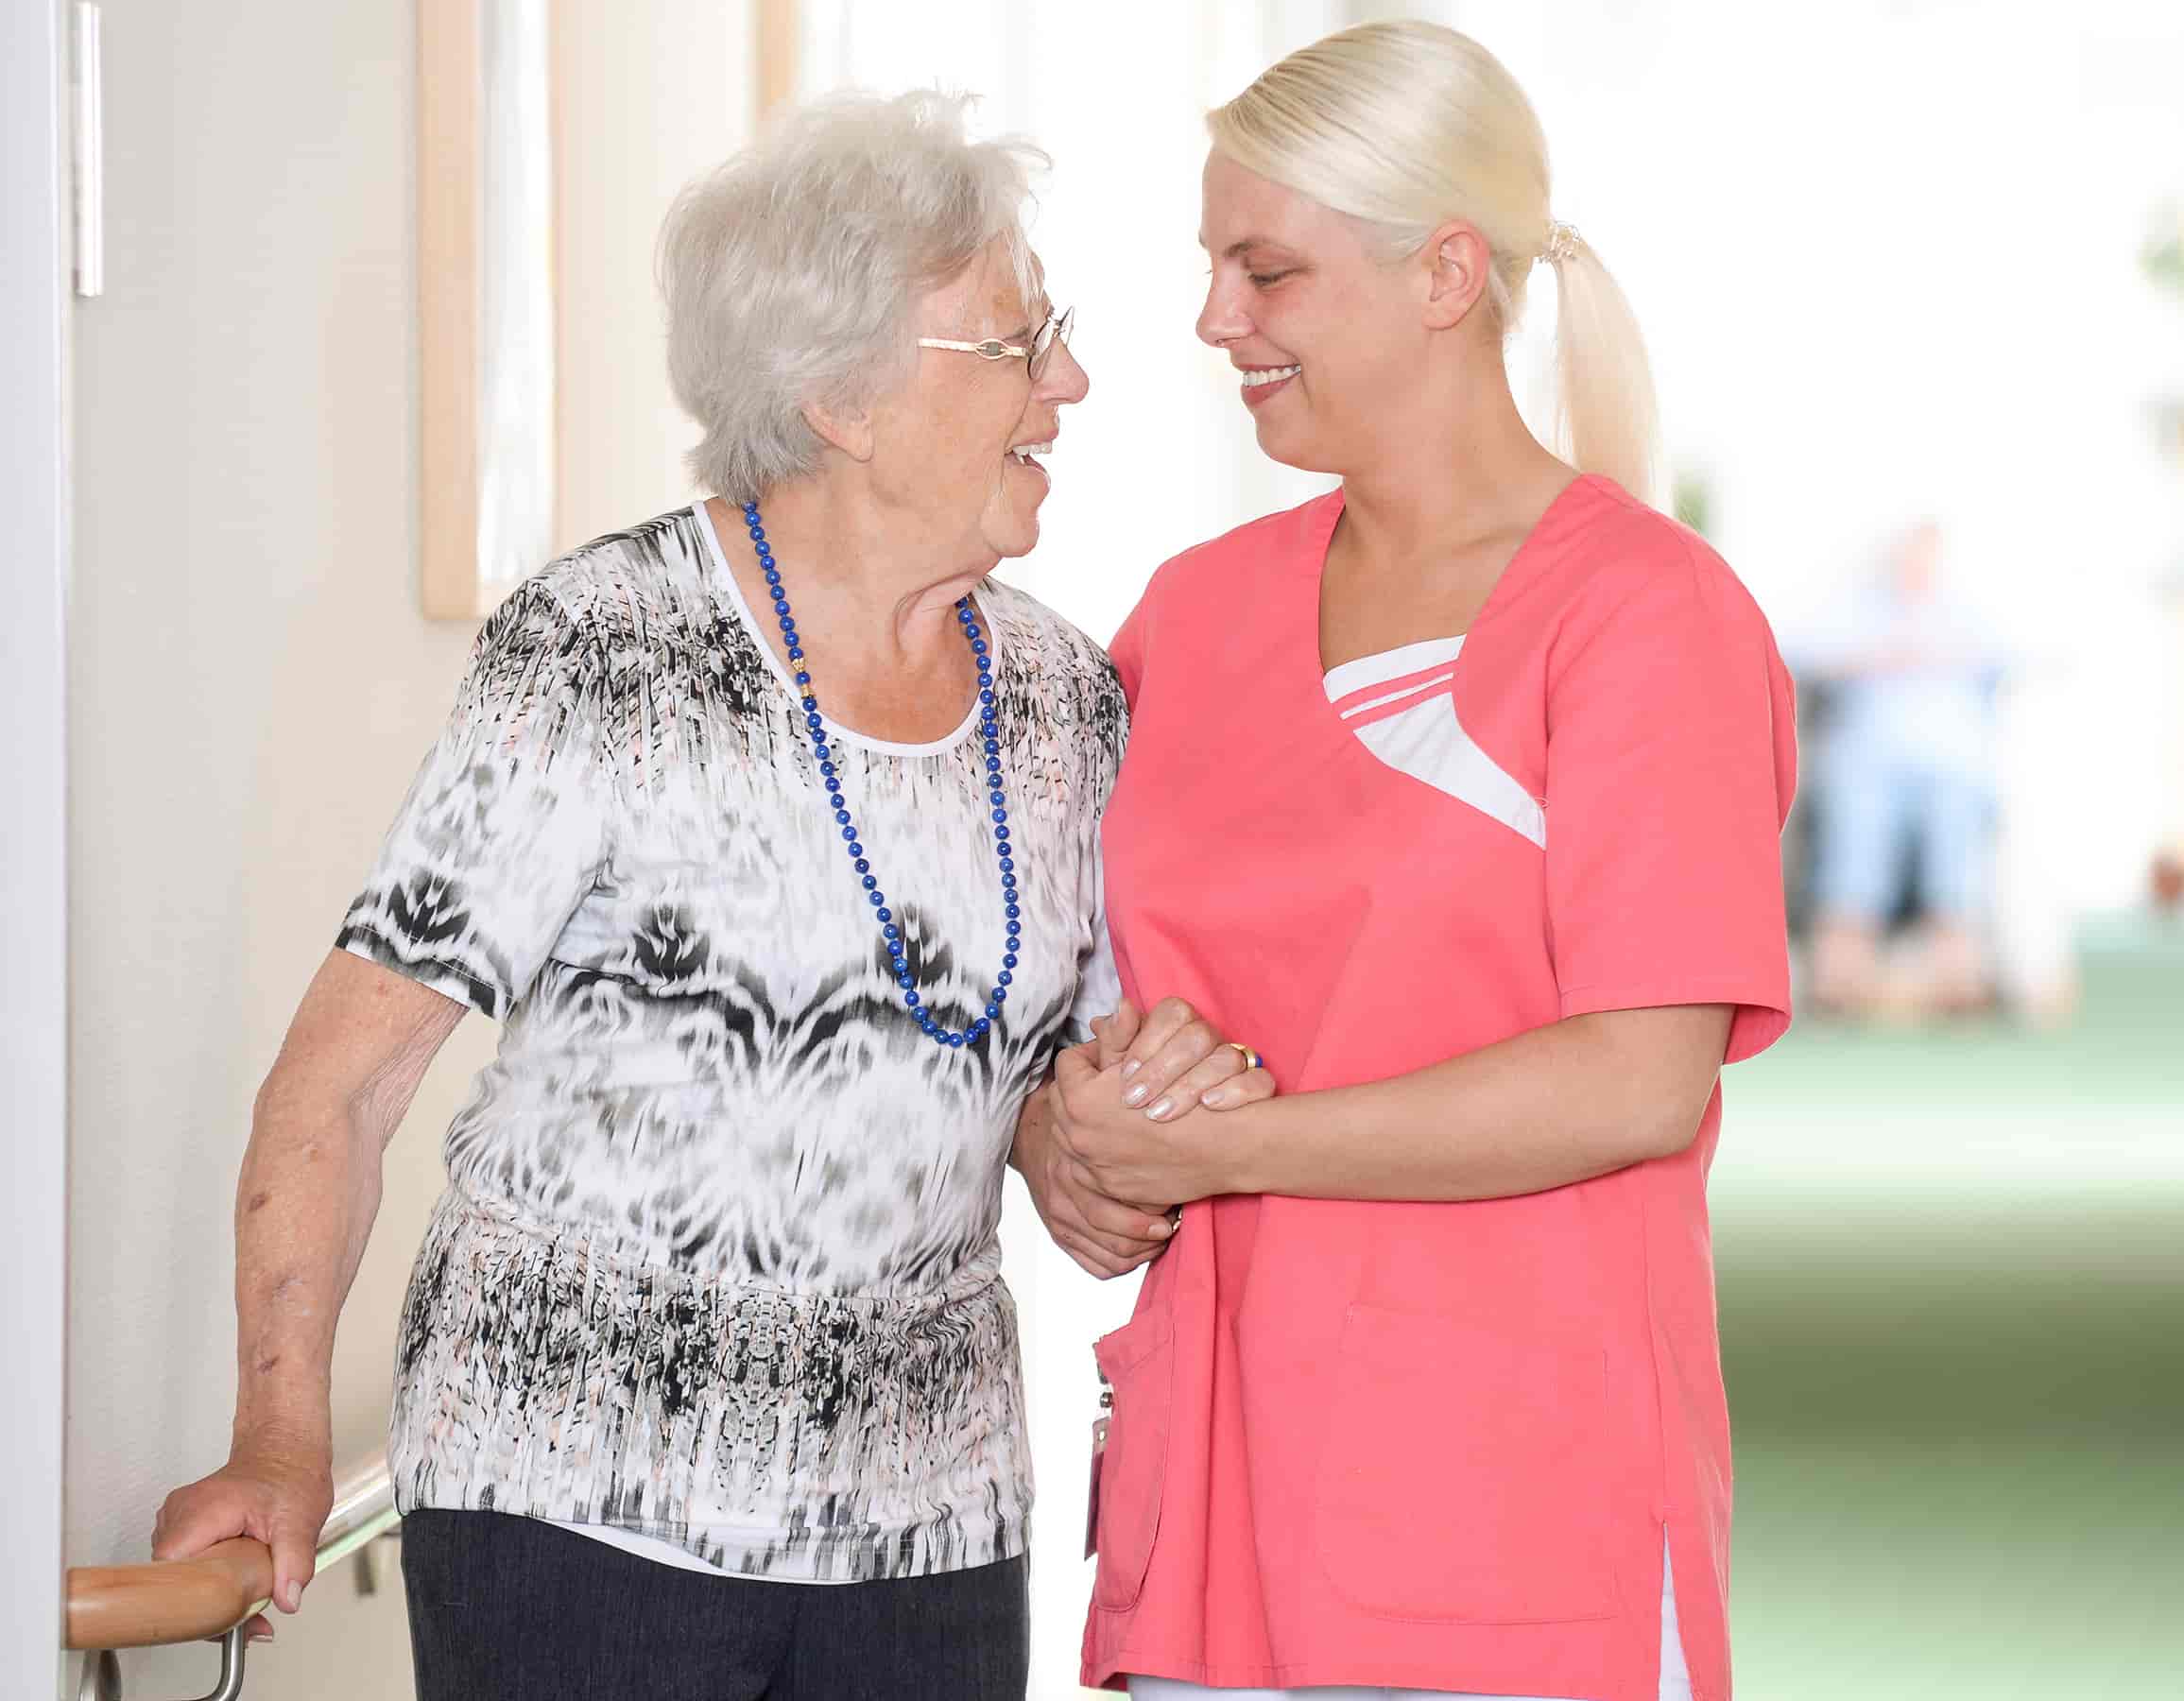 Malteser Pflegeeinrichtungen stehen für Qualität, hohe ethische Maßstäbe und seelische Betreuung älterer Menschen.